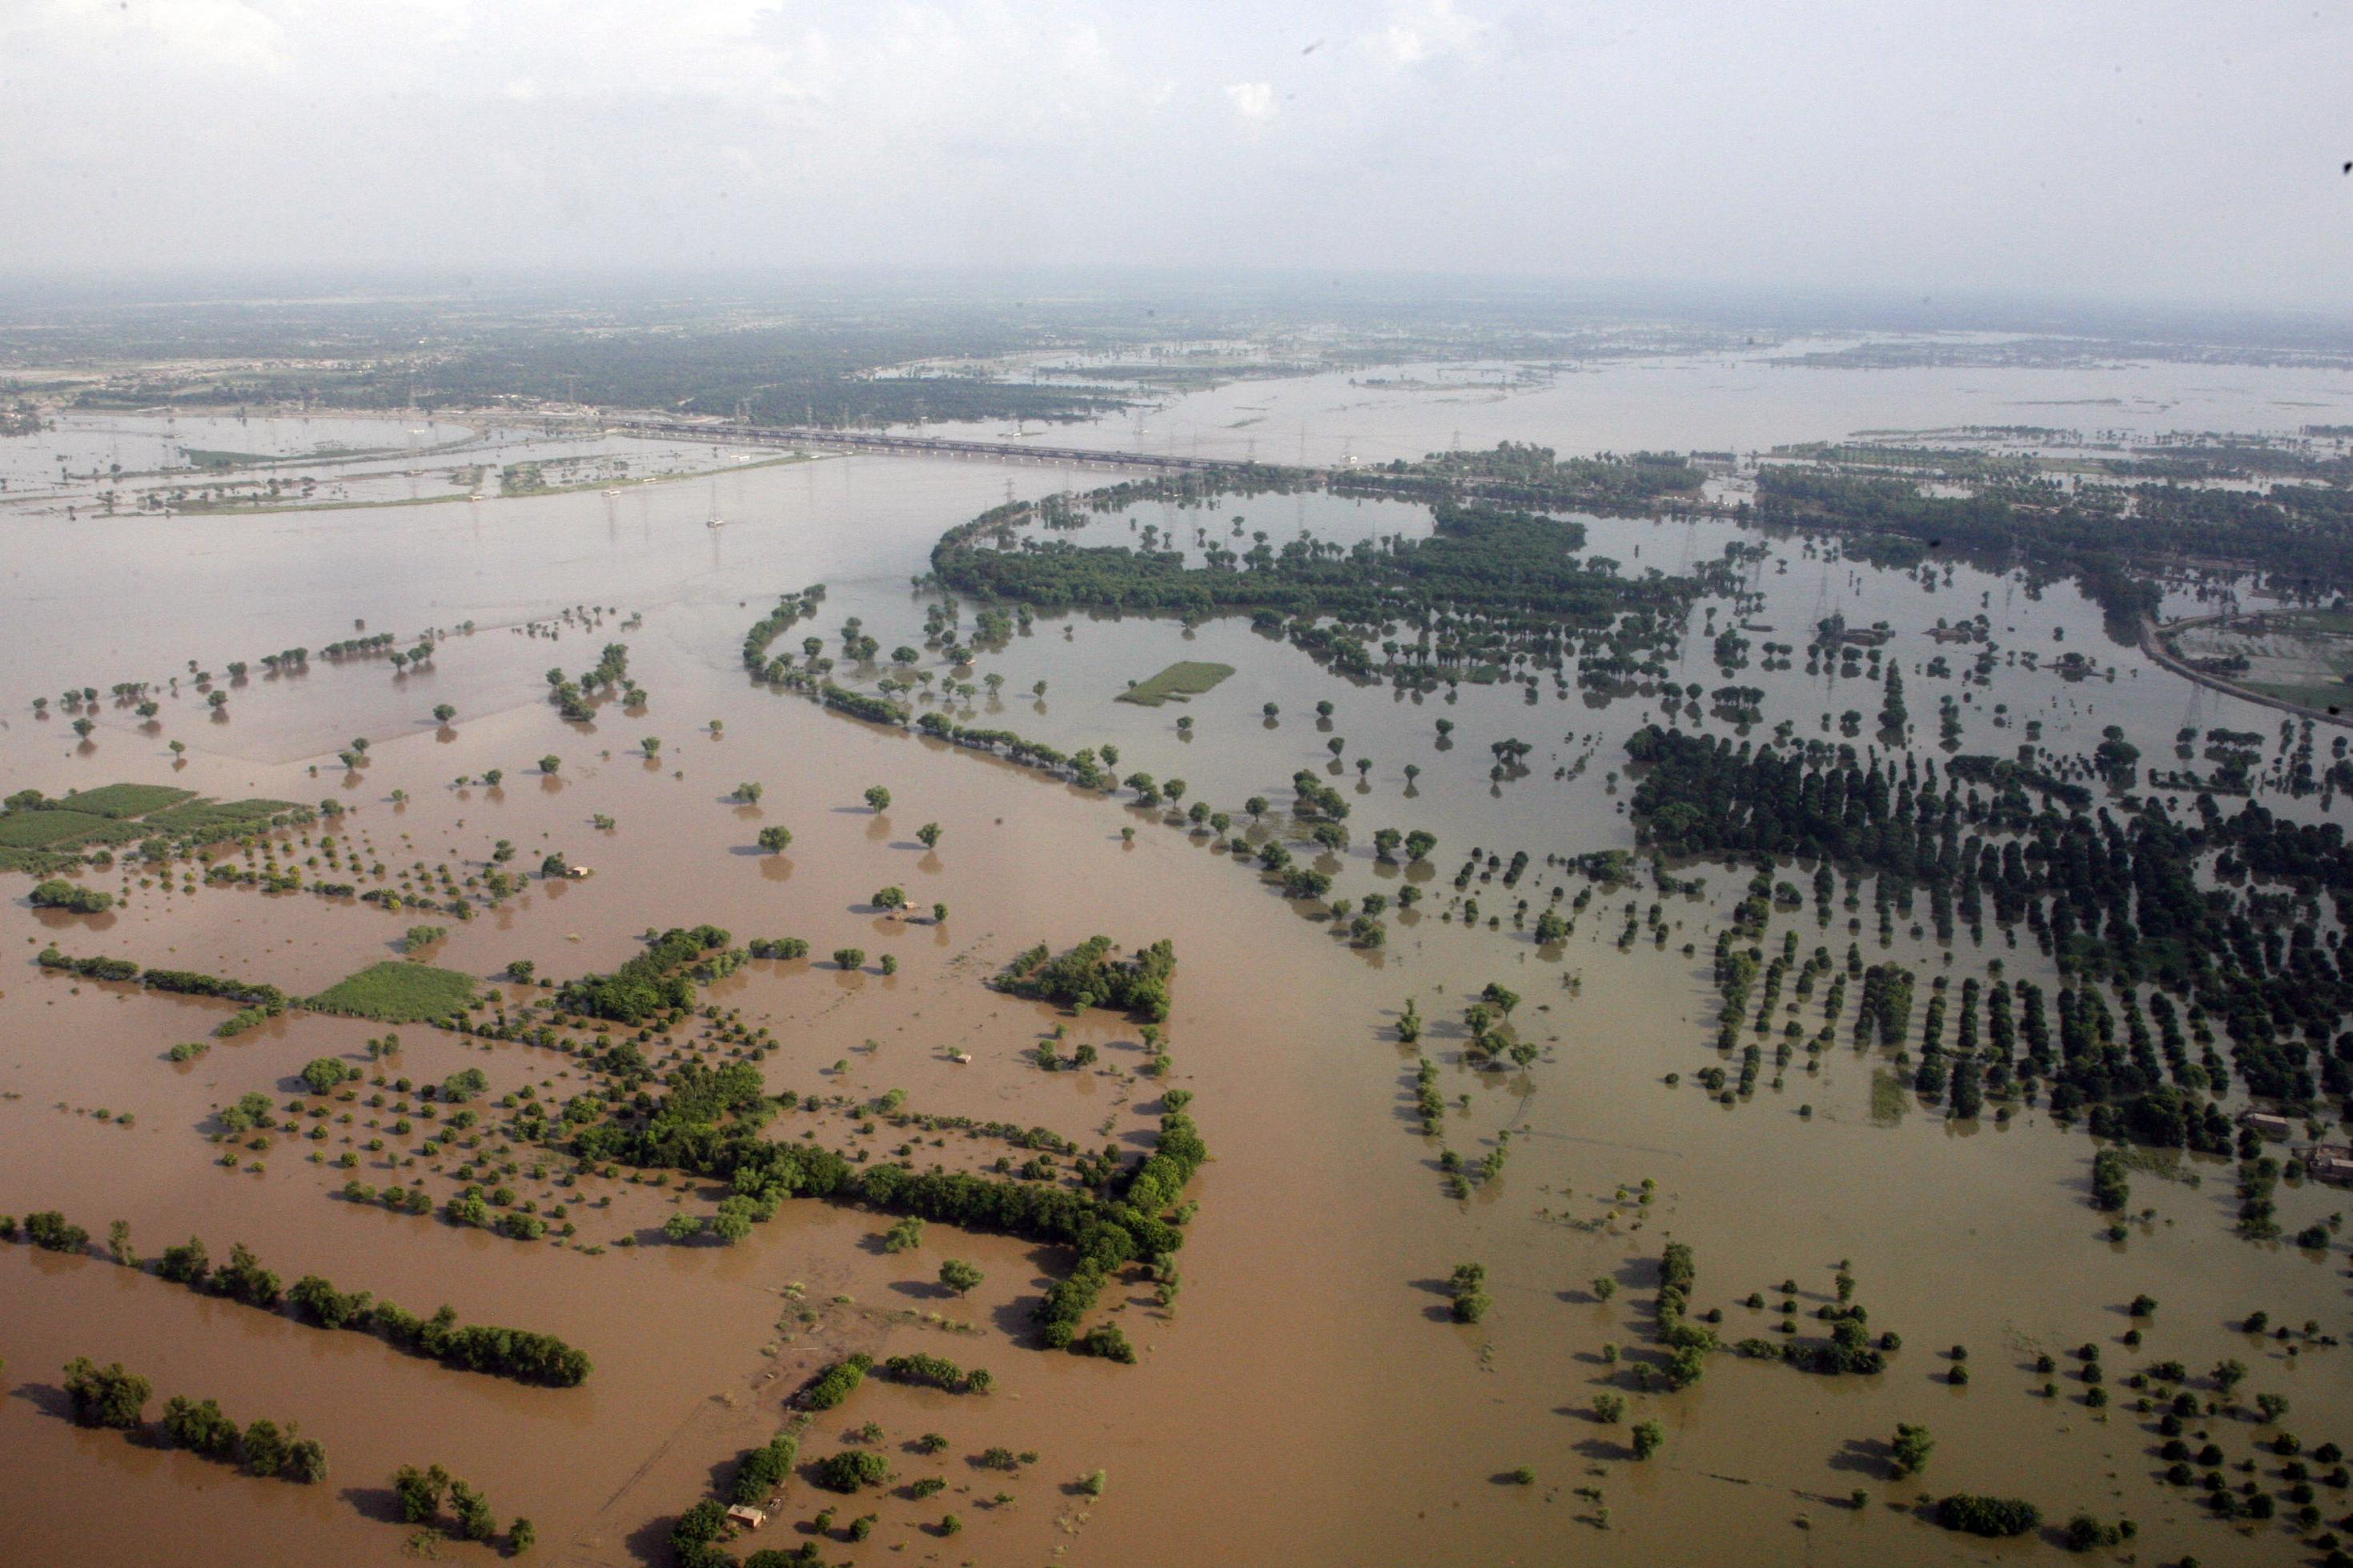 Luftaufnahme von überfluteten Feldern und Dörfern in der pakistanischen Provinz Punjab, nahe der Stadt Multan, im Sommer 2010.